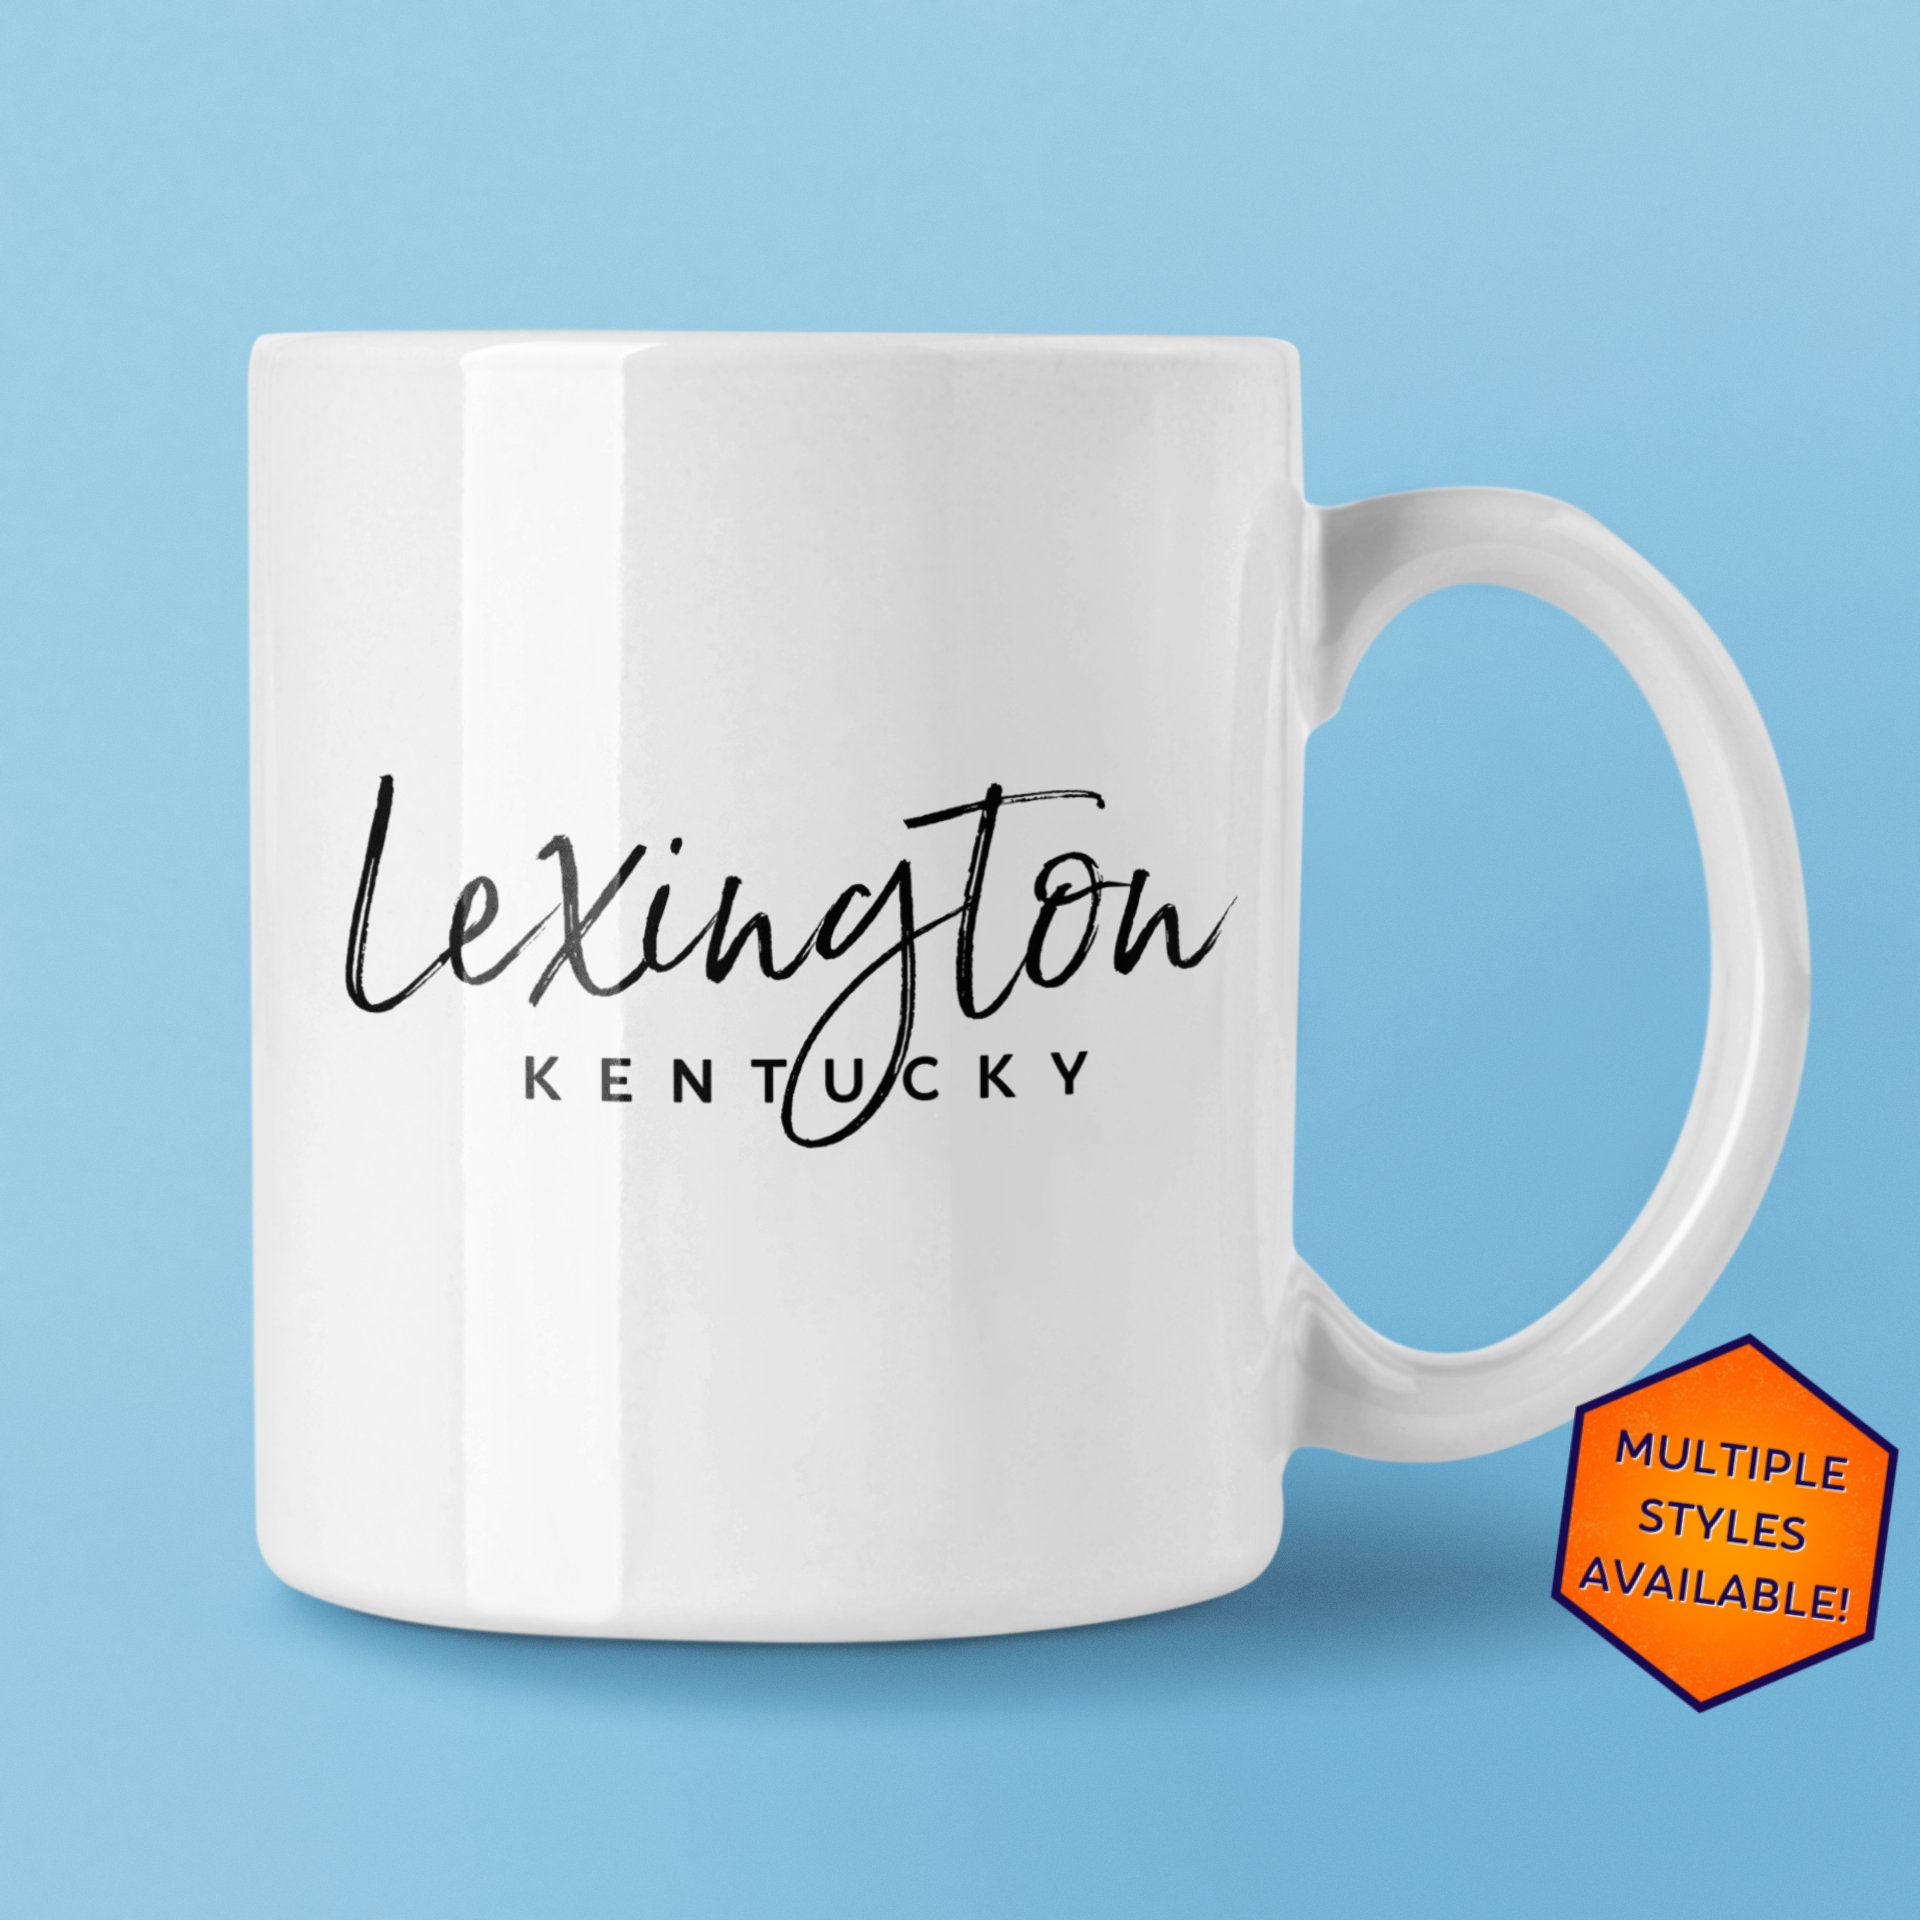 Design Ideas Lexington Handmade Glass Latte Mug